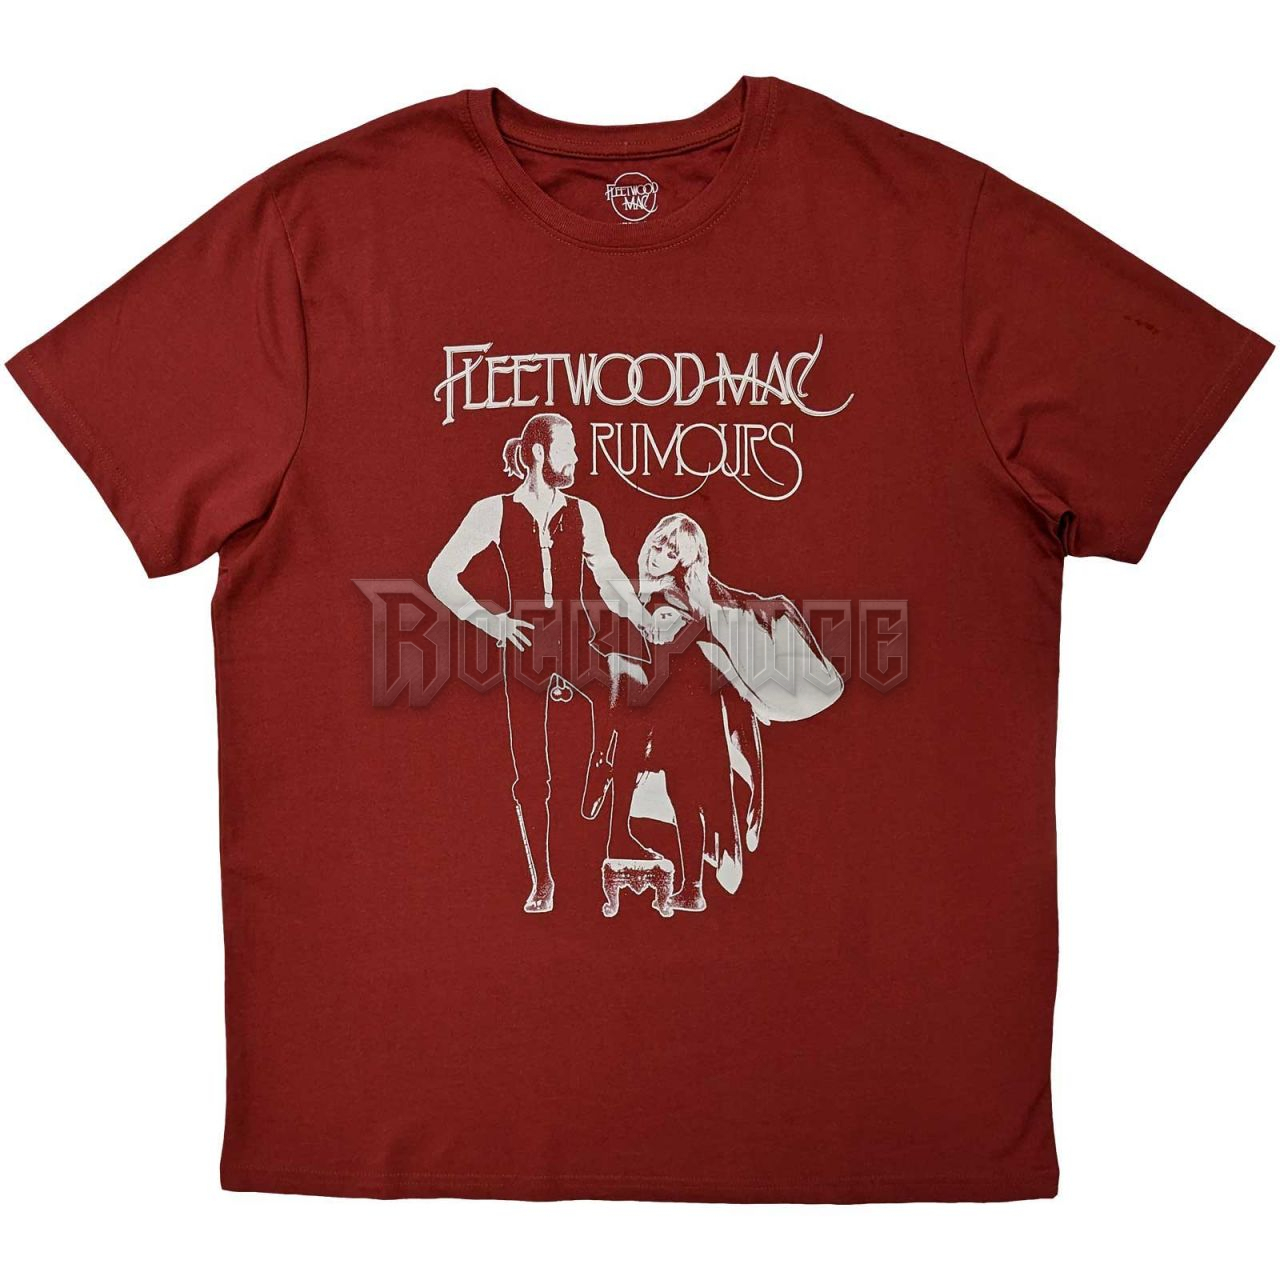 Fleetwood Mac - Rumours - unisex póló - FMTS01MR